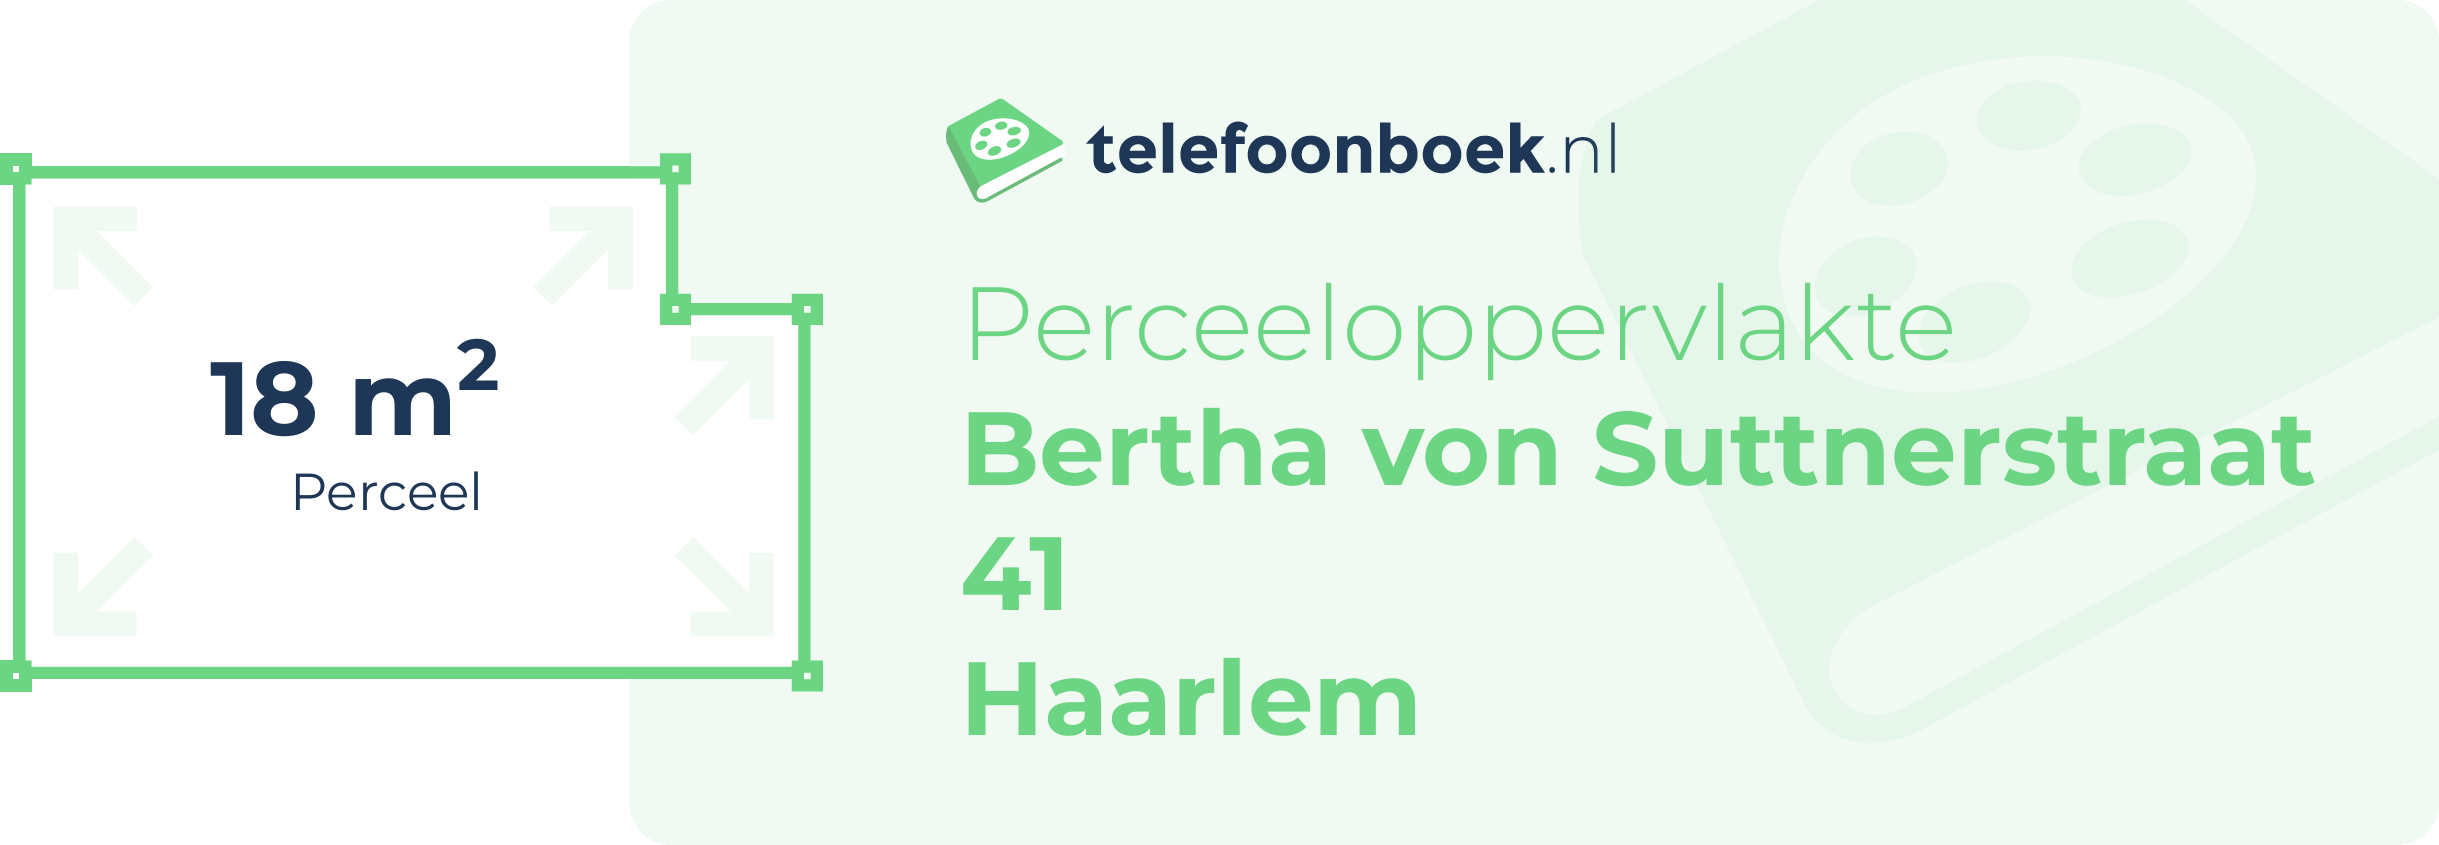 Perceeloppervlakte Bertha Von Suttnerstraat 41 Haarlem